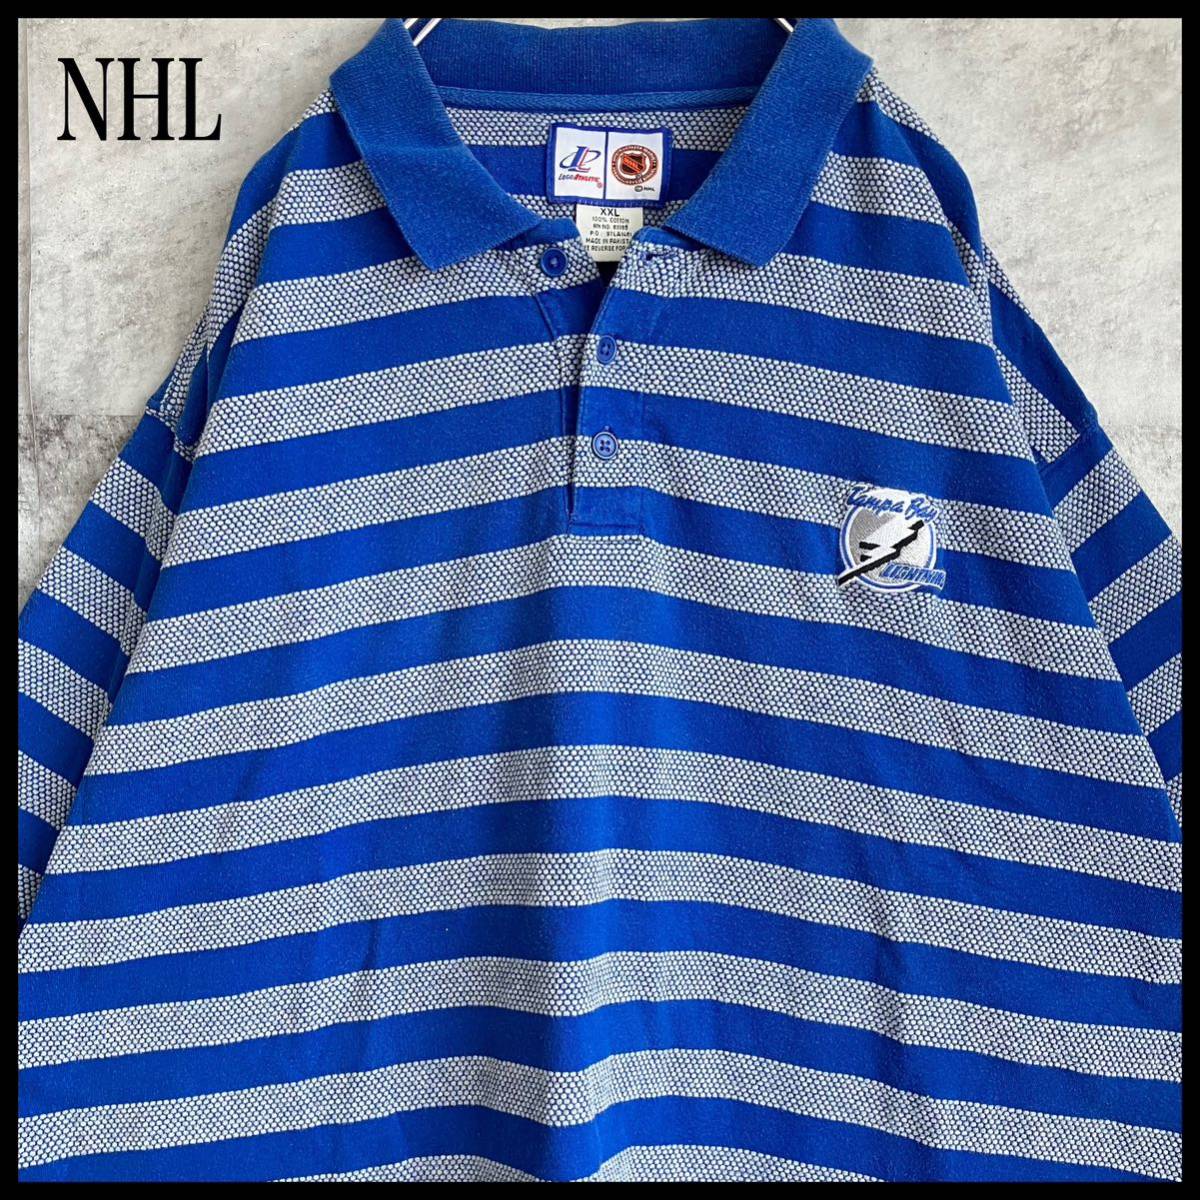 NHL ロゴ刺繍 袖刺繍 ボーダー ブルー 2XL ビッグサイズ 95 ゴルフウェア golf 半袖 トップス 古着の画像1